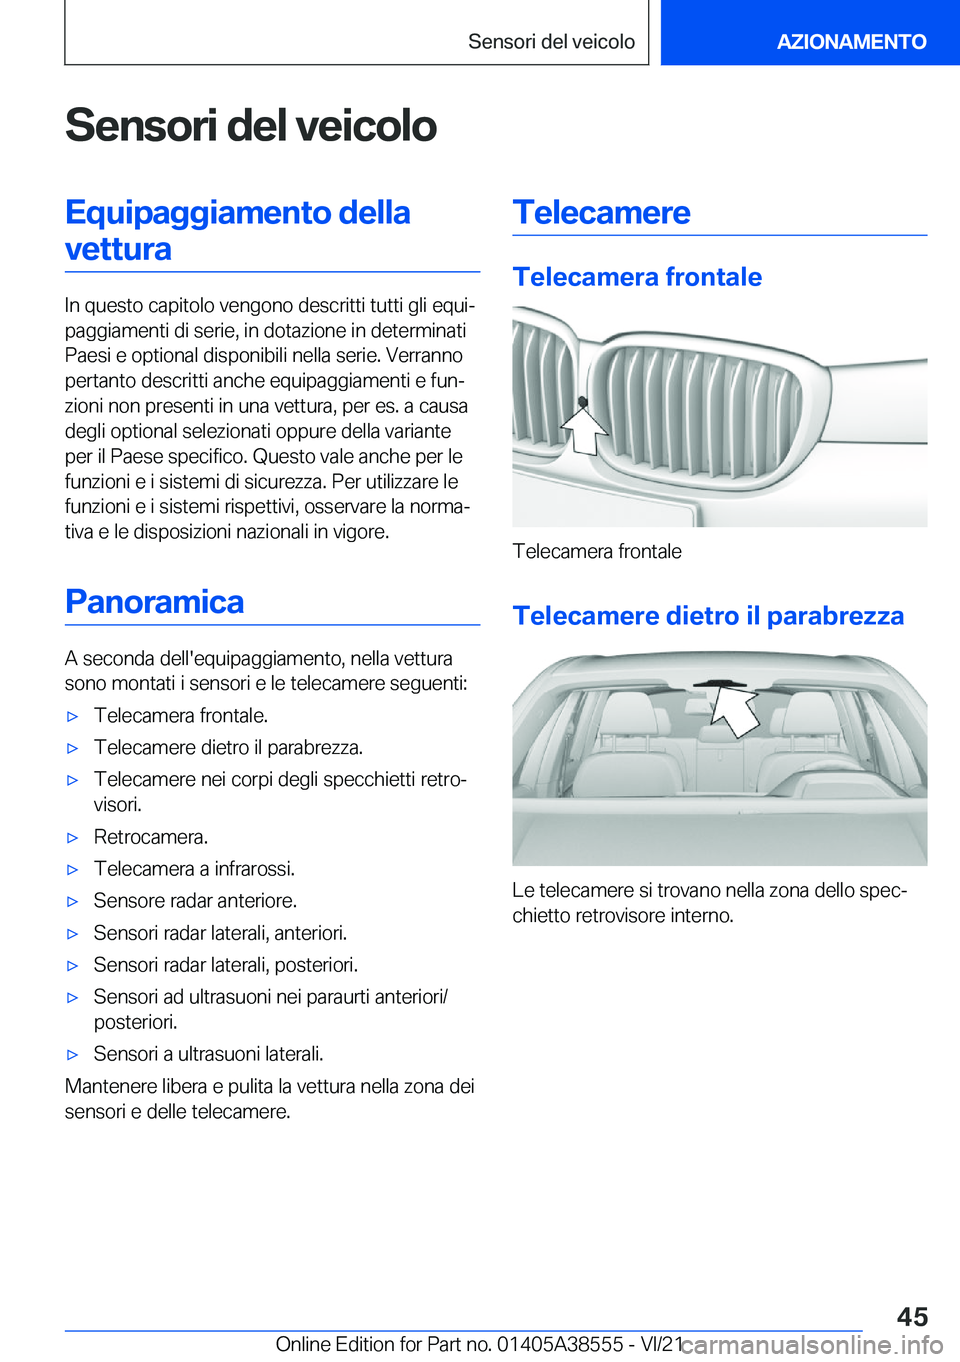 BMW X6 2022  Libretti Di Uso E manutenzione (in Italian) �S�e�n�s�o�r�i��d�e�l��v�e�i�c�o�l�o�E�q�u�i�p�a�g�g�i�a�m�e�n�t�o��d�e�l�l�a�v�e�t�t�u�r�a
�I�n��q�u�e�s�t�o��c�a�p�i�t�o�l�o��v�e�n�g�o�n�o��d�e�s�c�r�i�t�t�i��t�u�t�t�i��g�l�i��e�q�u�iª